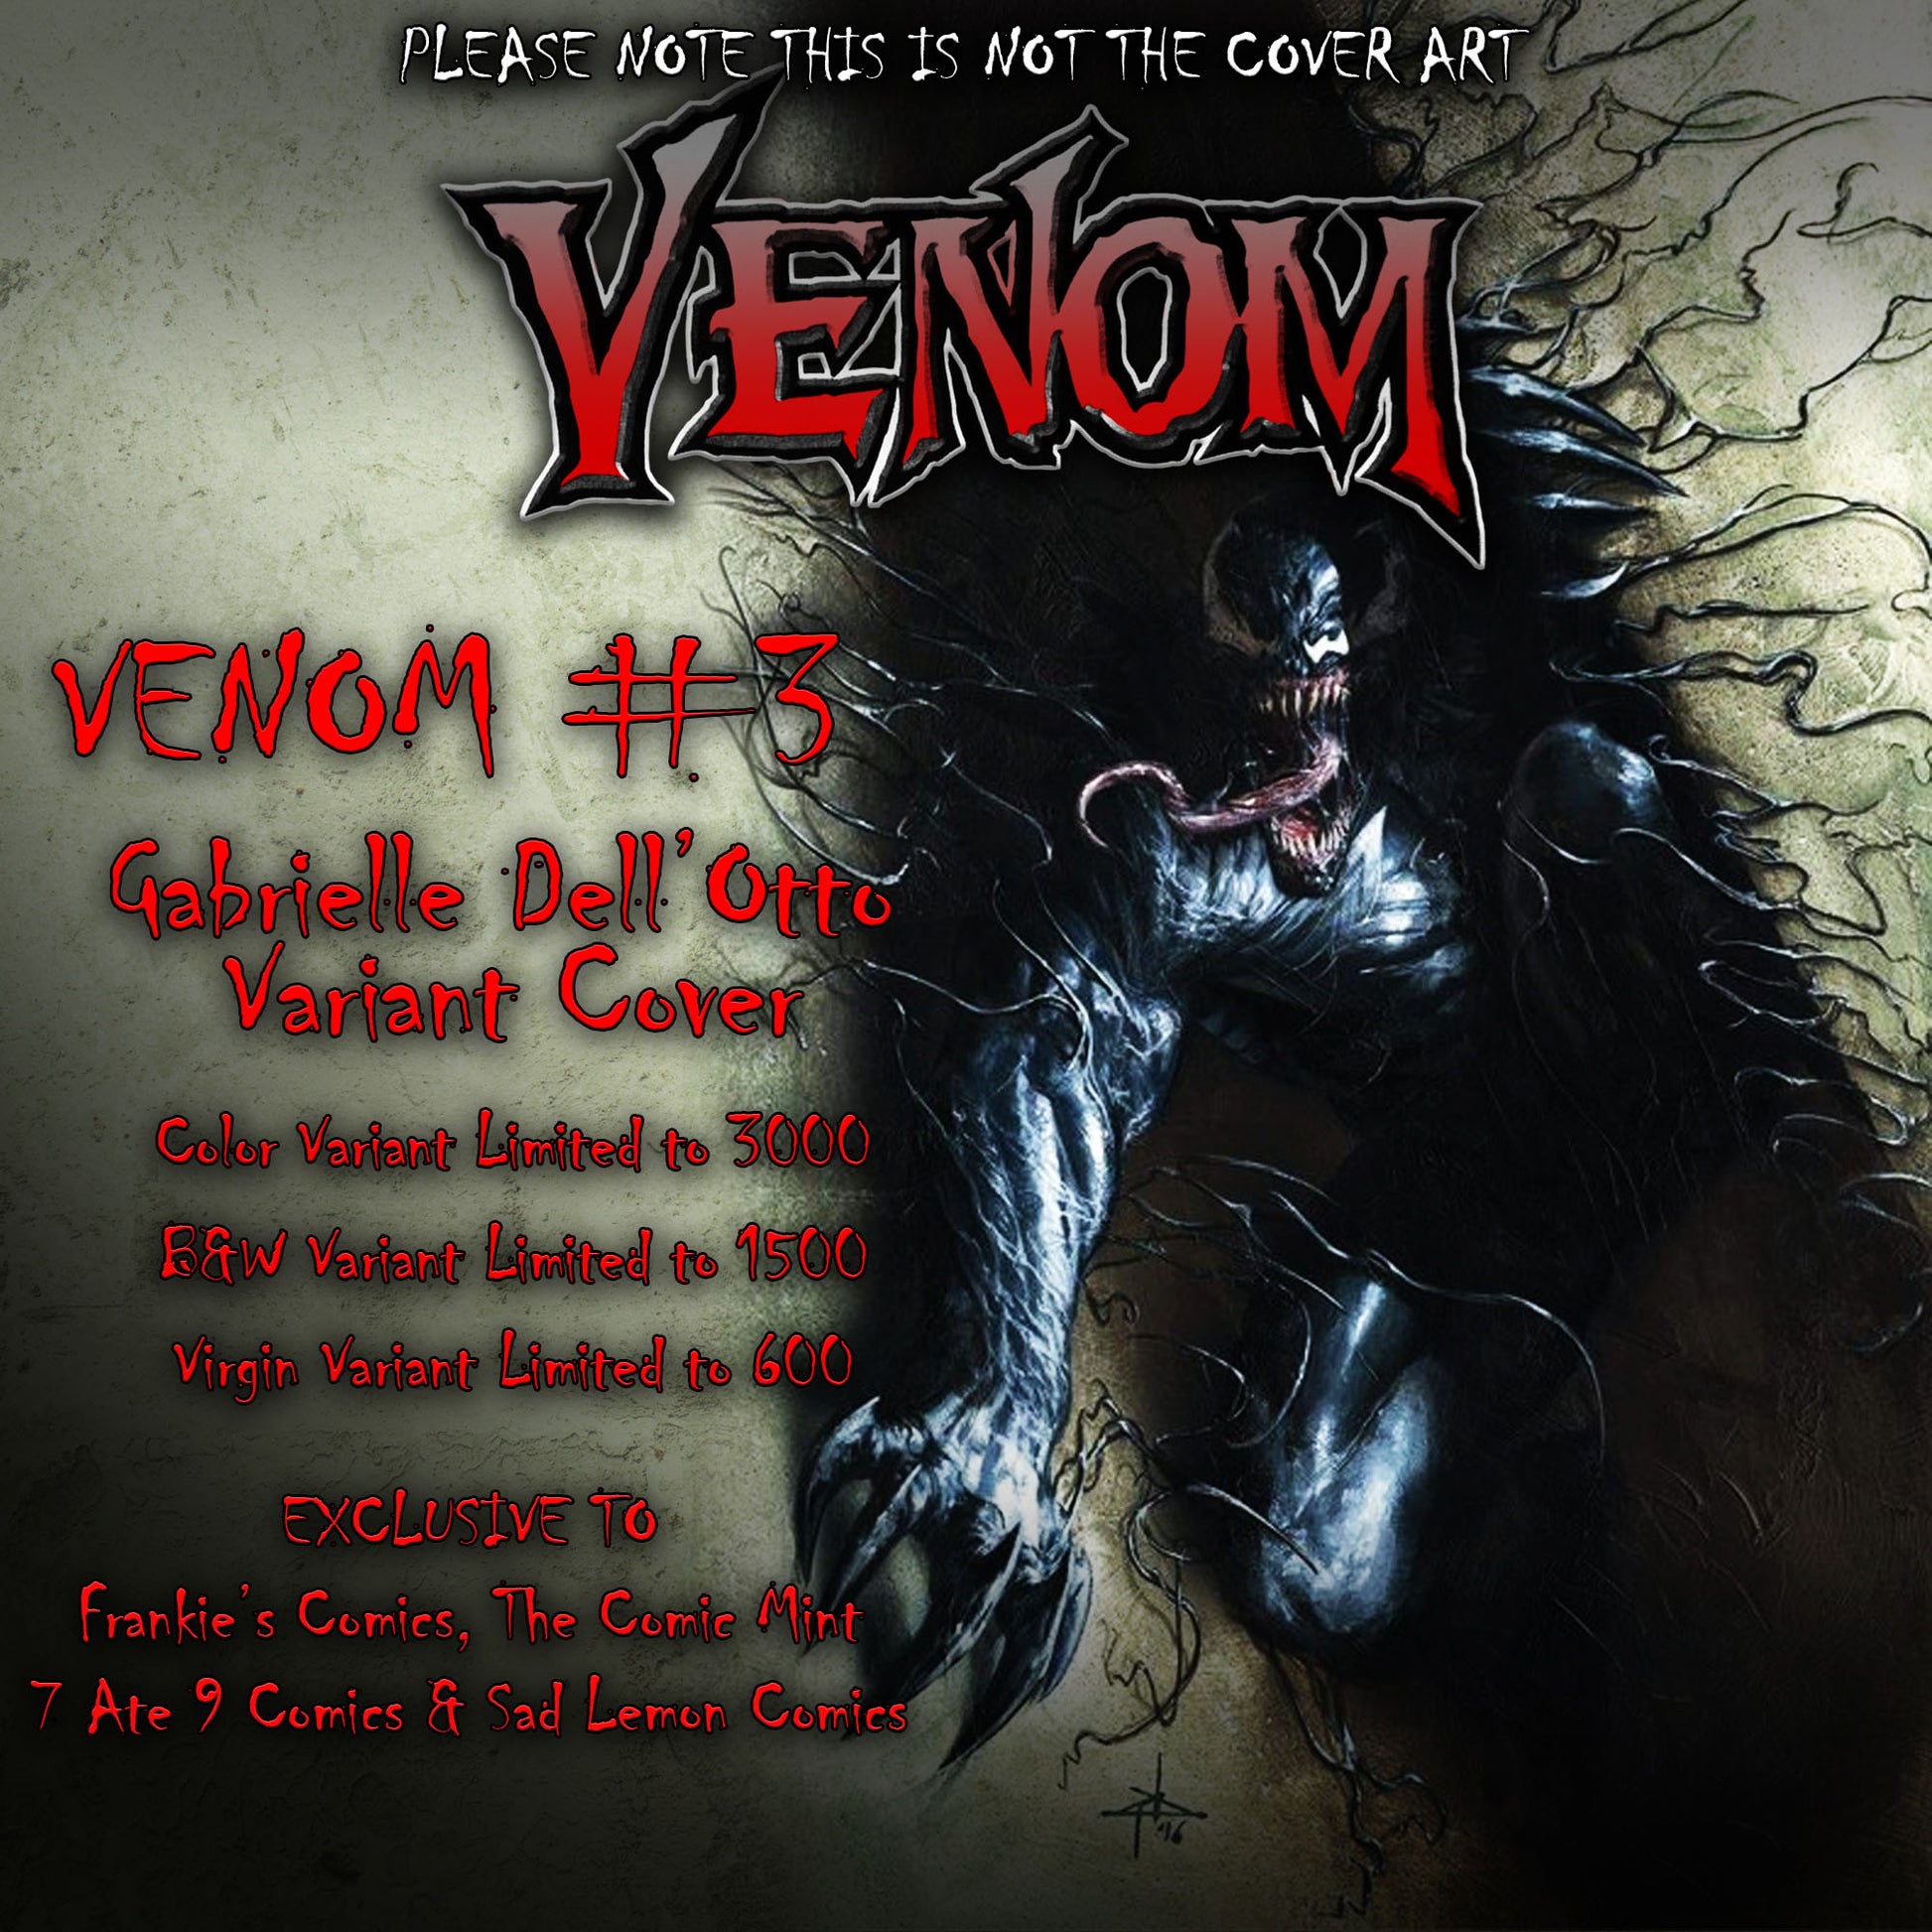 NOW VENOM #3 GABRIELE DELL’OTTO COLOR B&W VIRGIN VARIANT SETS - Sad Lemon Comics